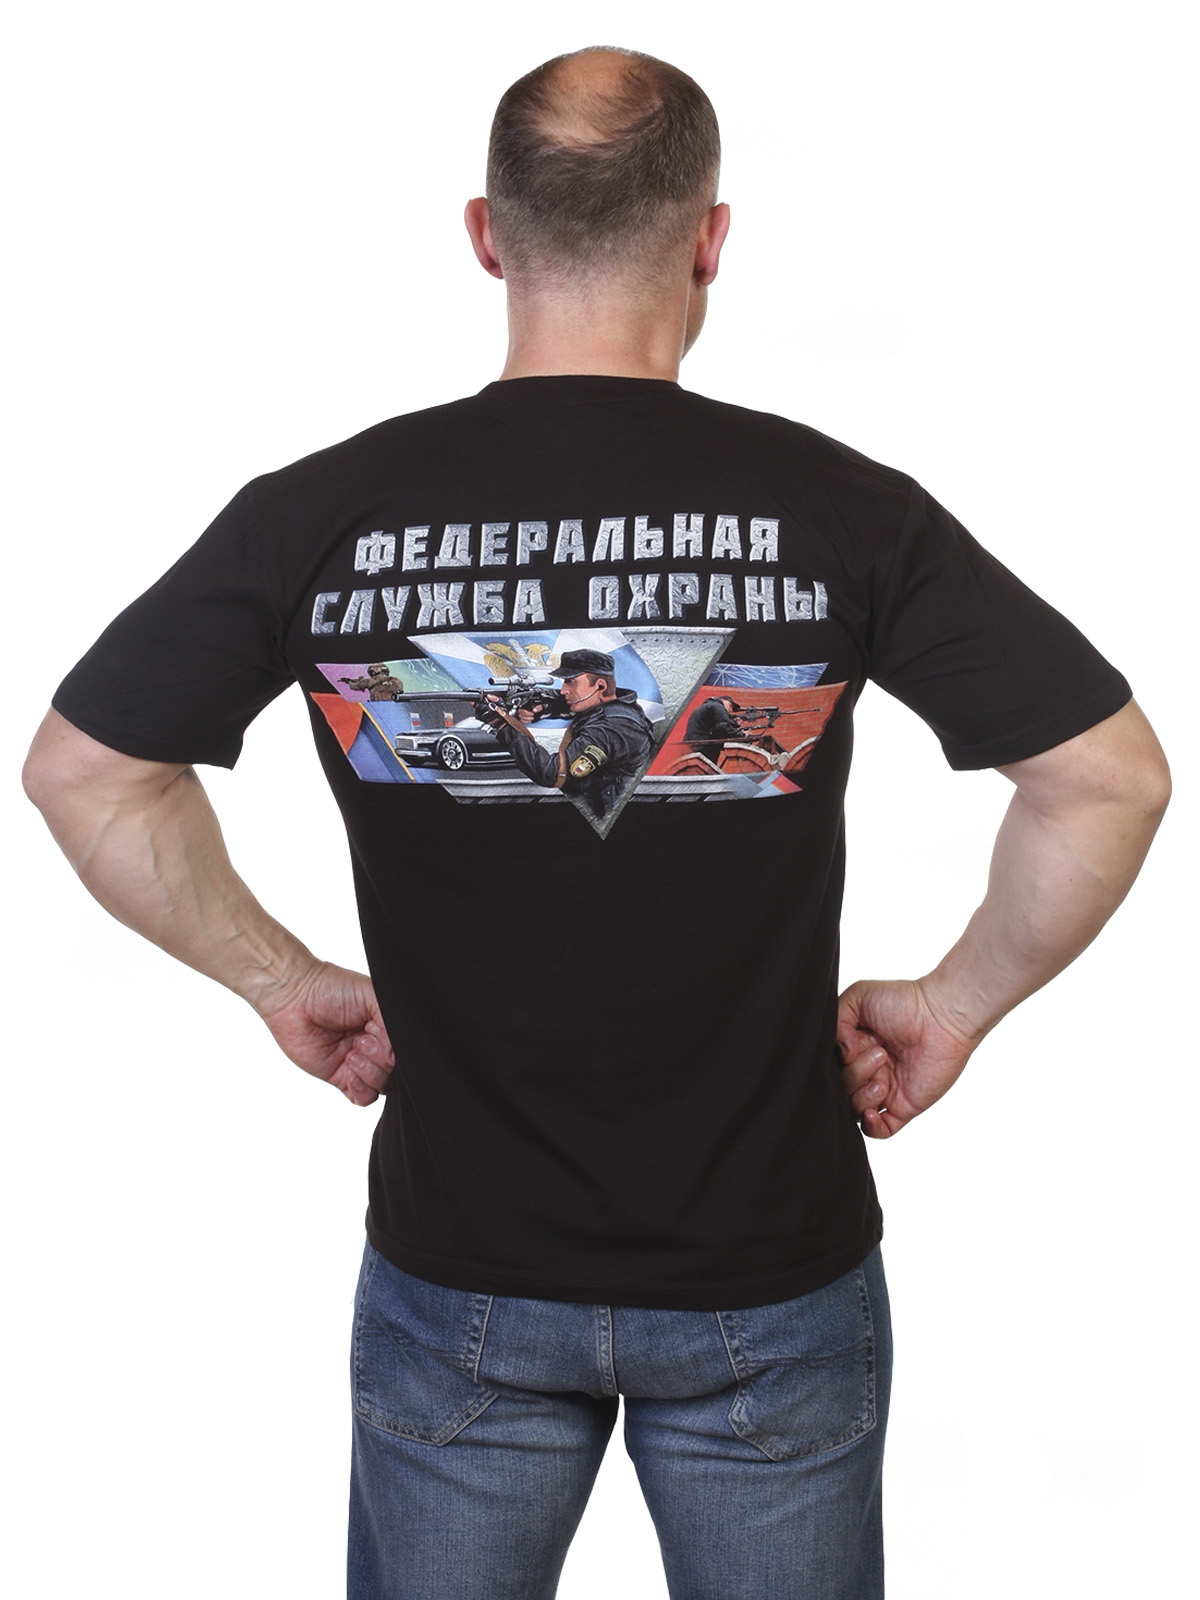 Купить футболку ФСО России с ярким принтом